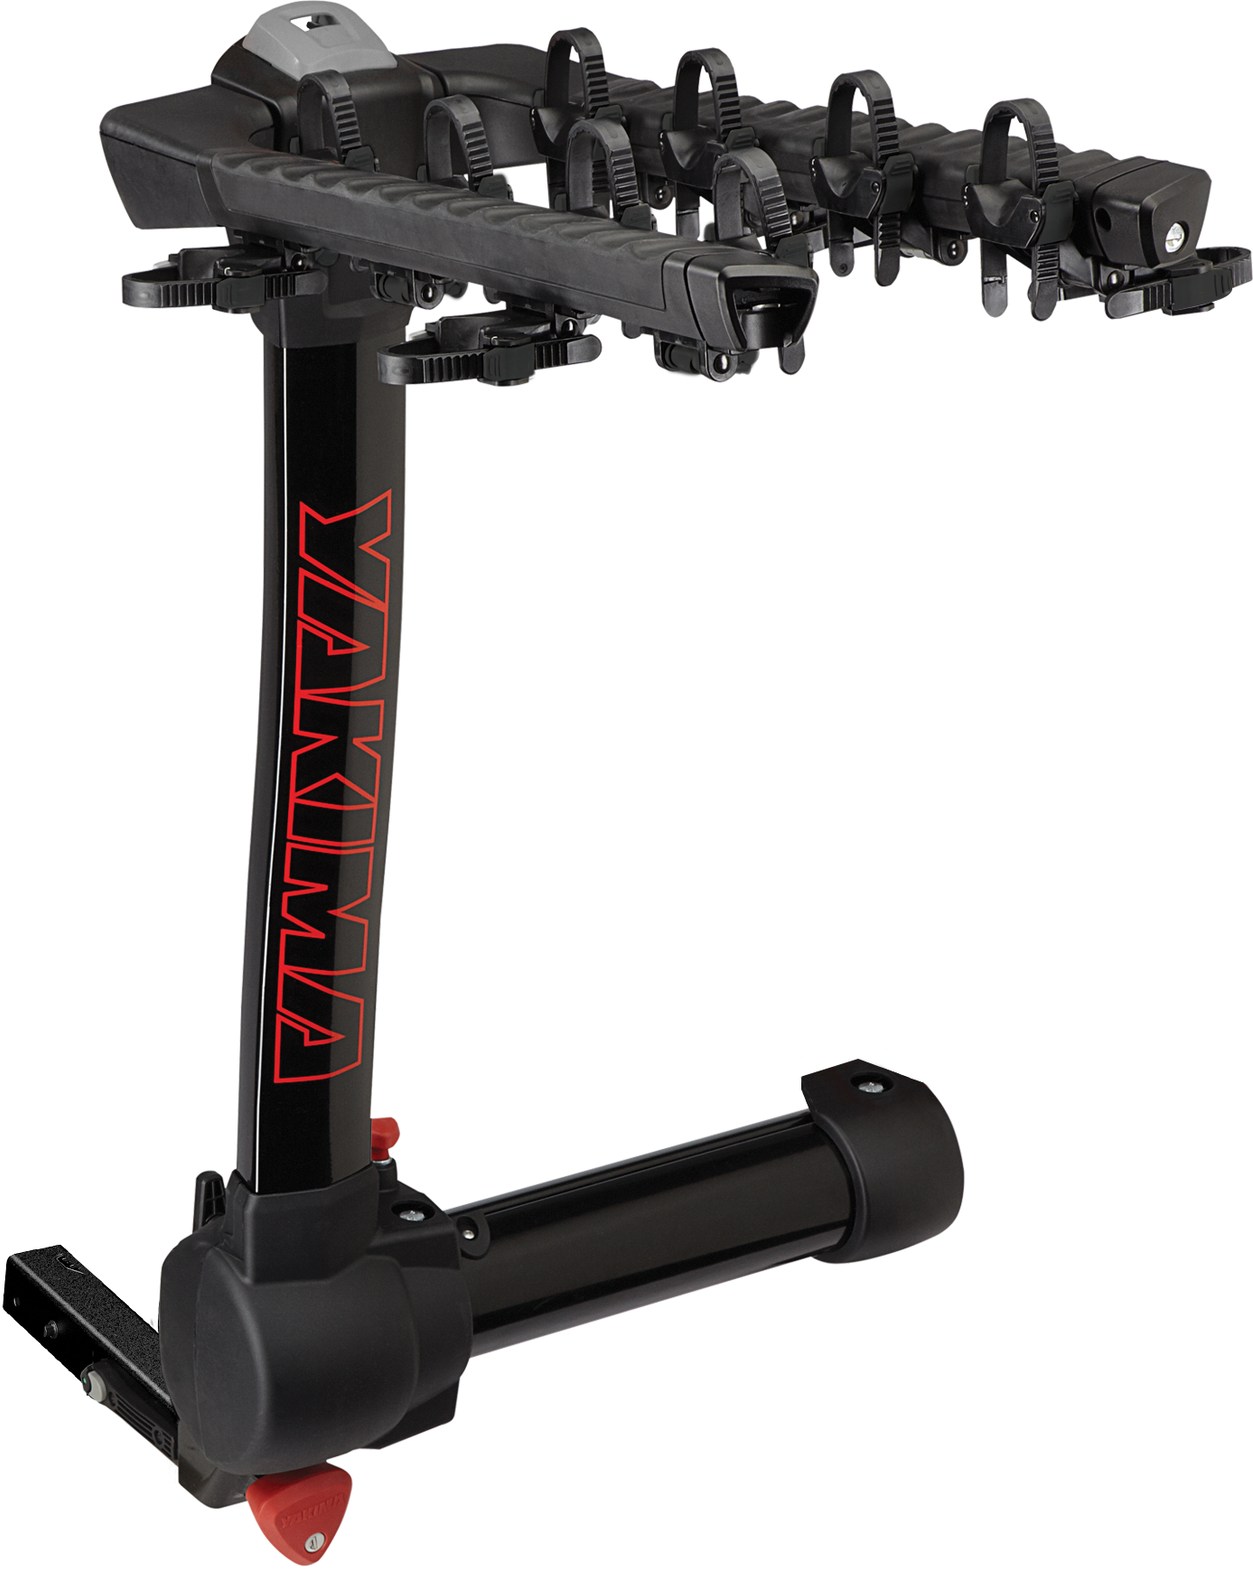 onyarbi 901322 ремкомплект сцепного устройства Крепление для прицепного устройства FullSwing на 4 велосипеда Yakima, черный